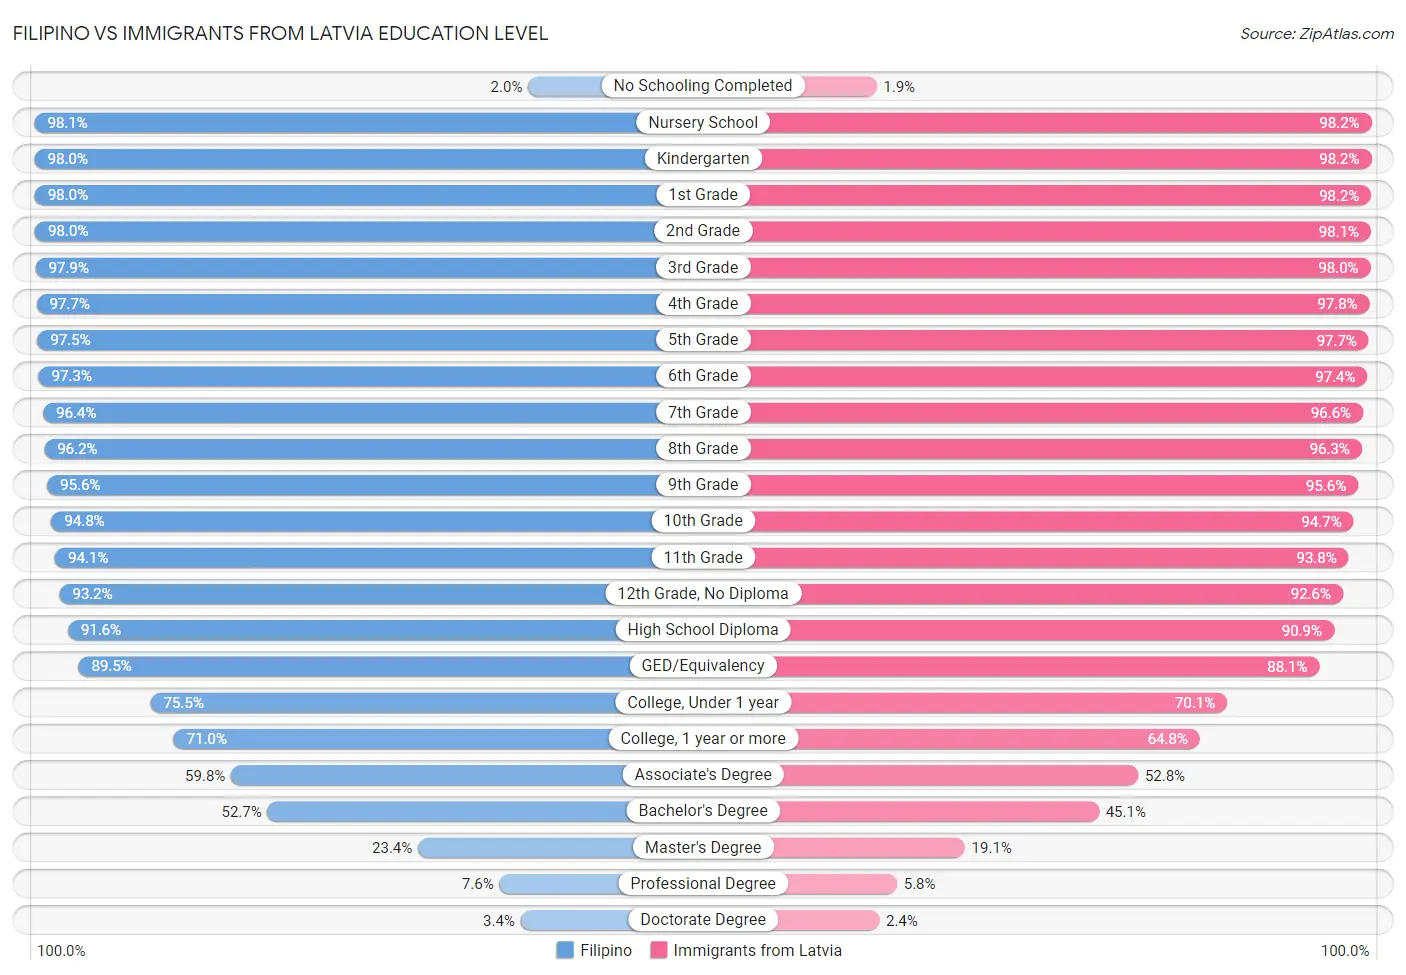 Filipino vs Immigrants from Latvia Education Level